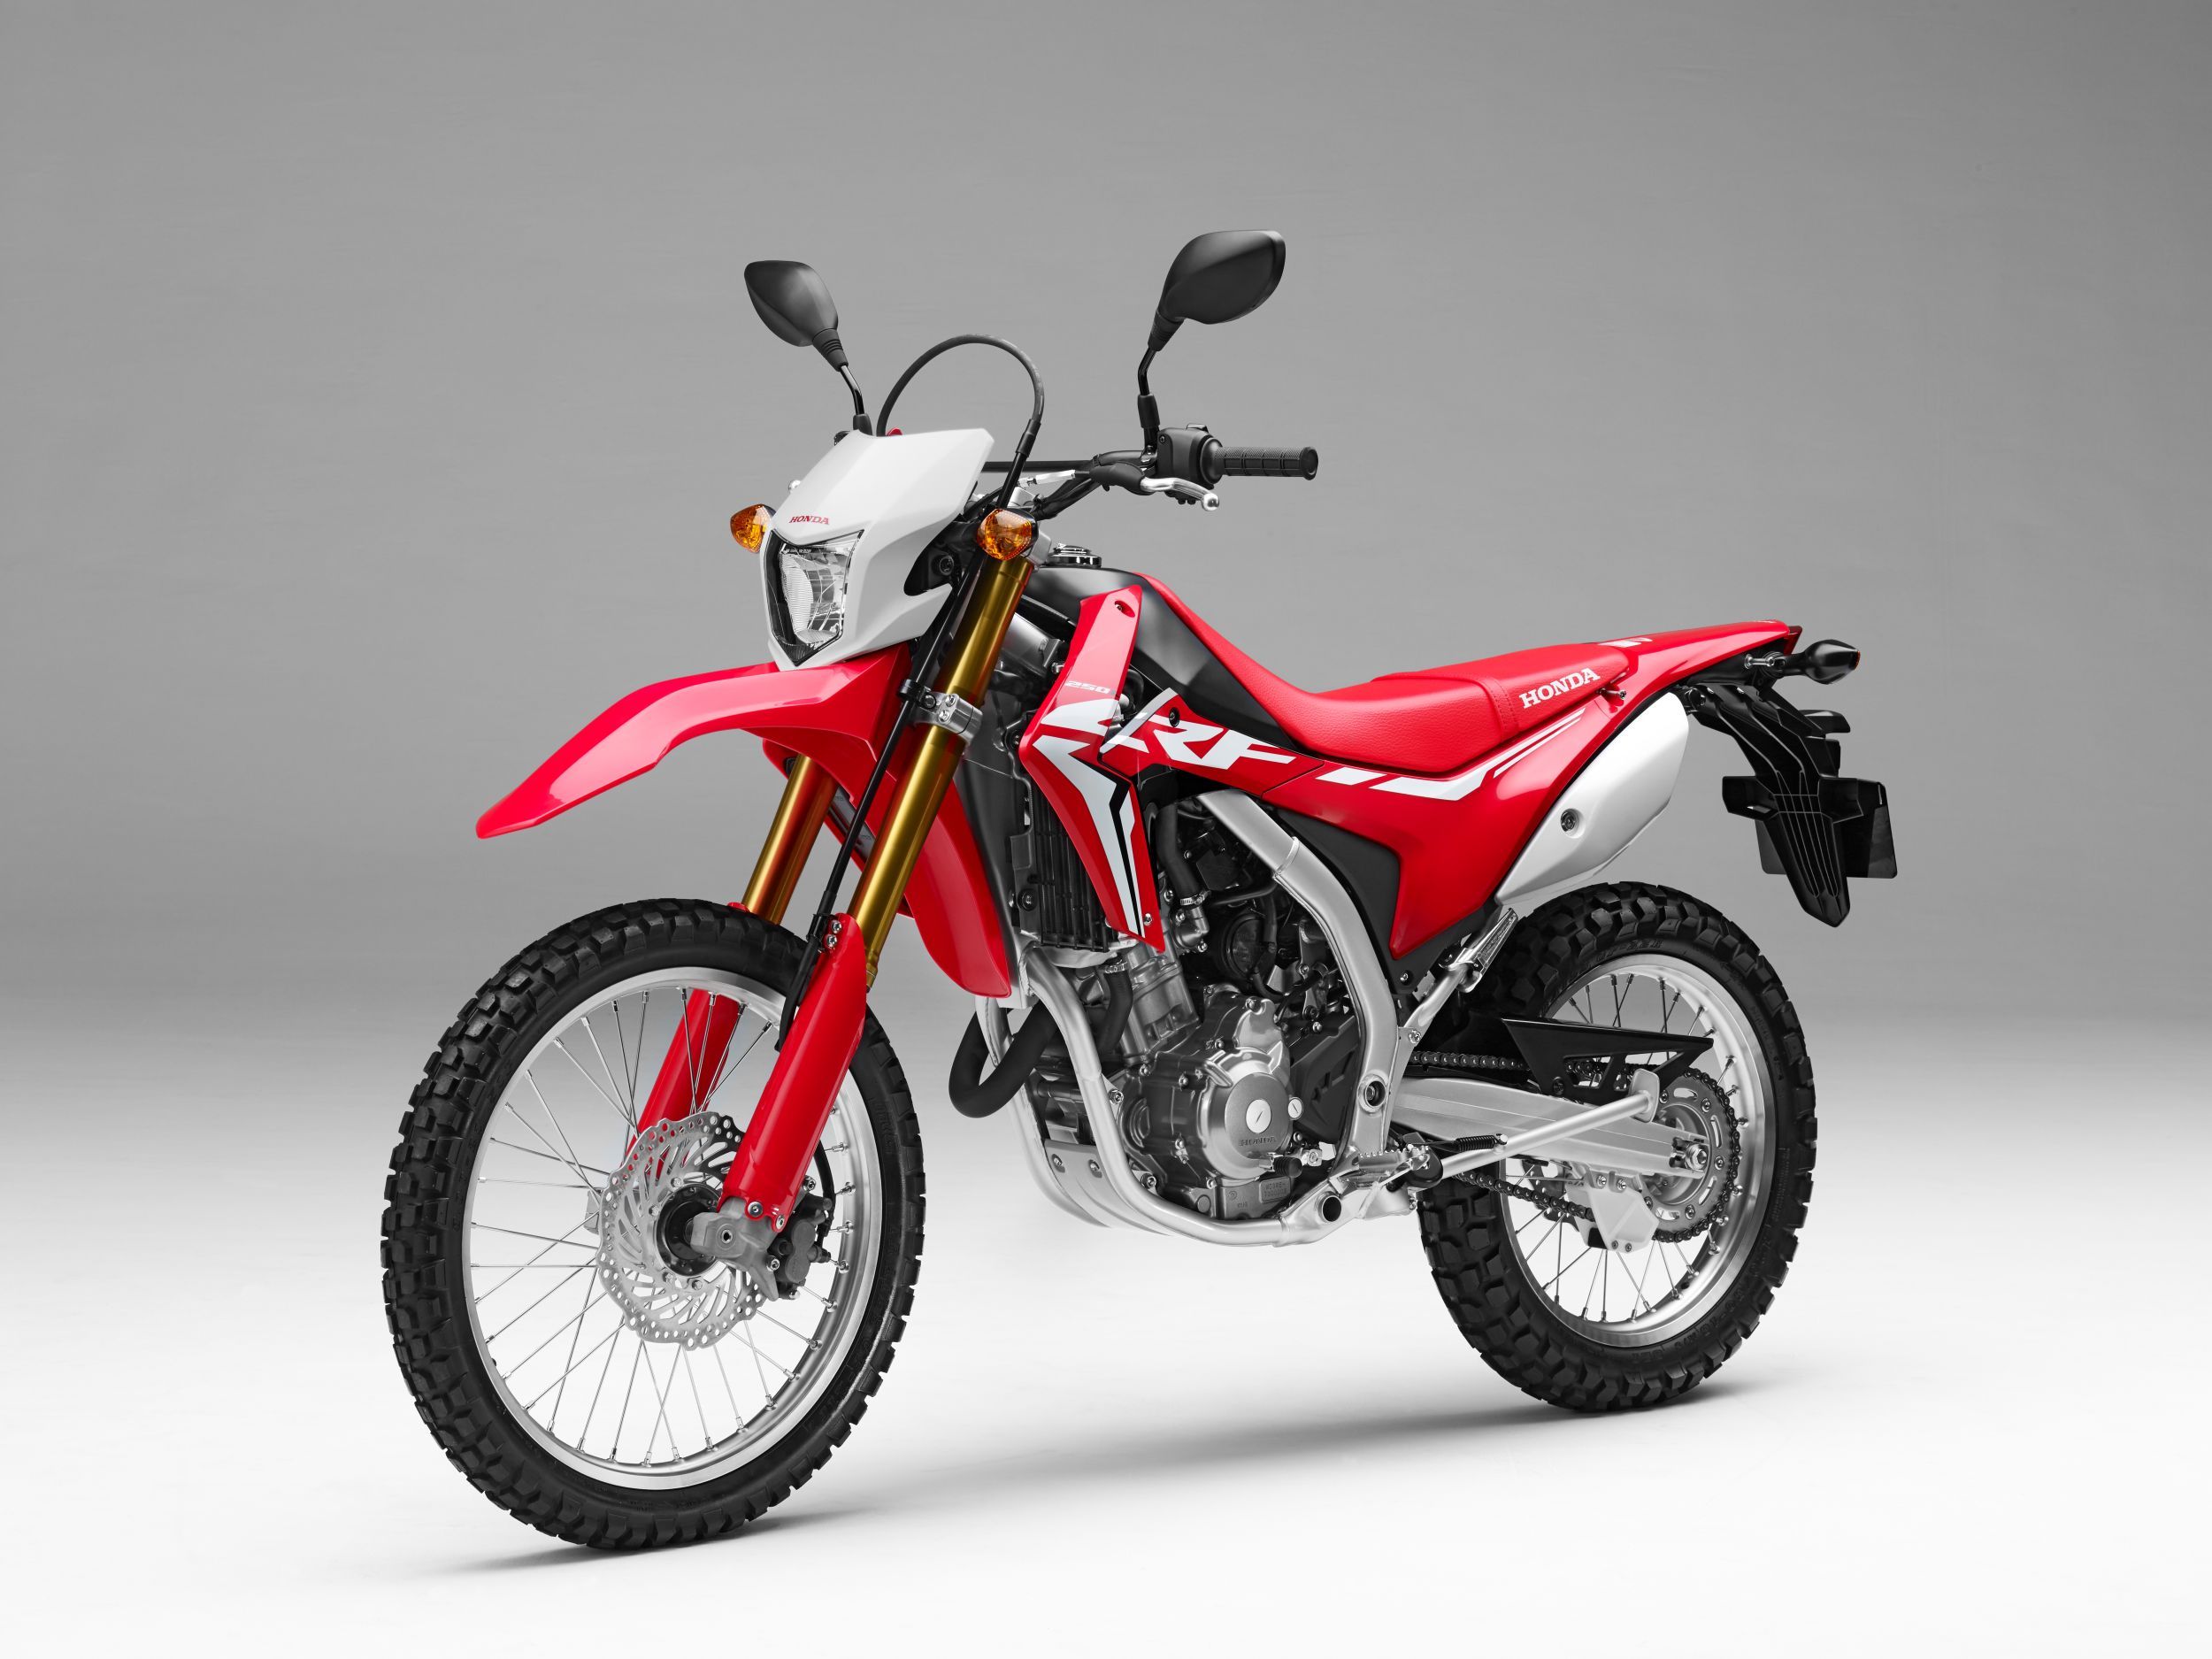 Gebrauchte Honda CRF 250 L Motorräder kaufen